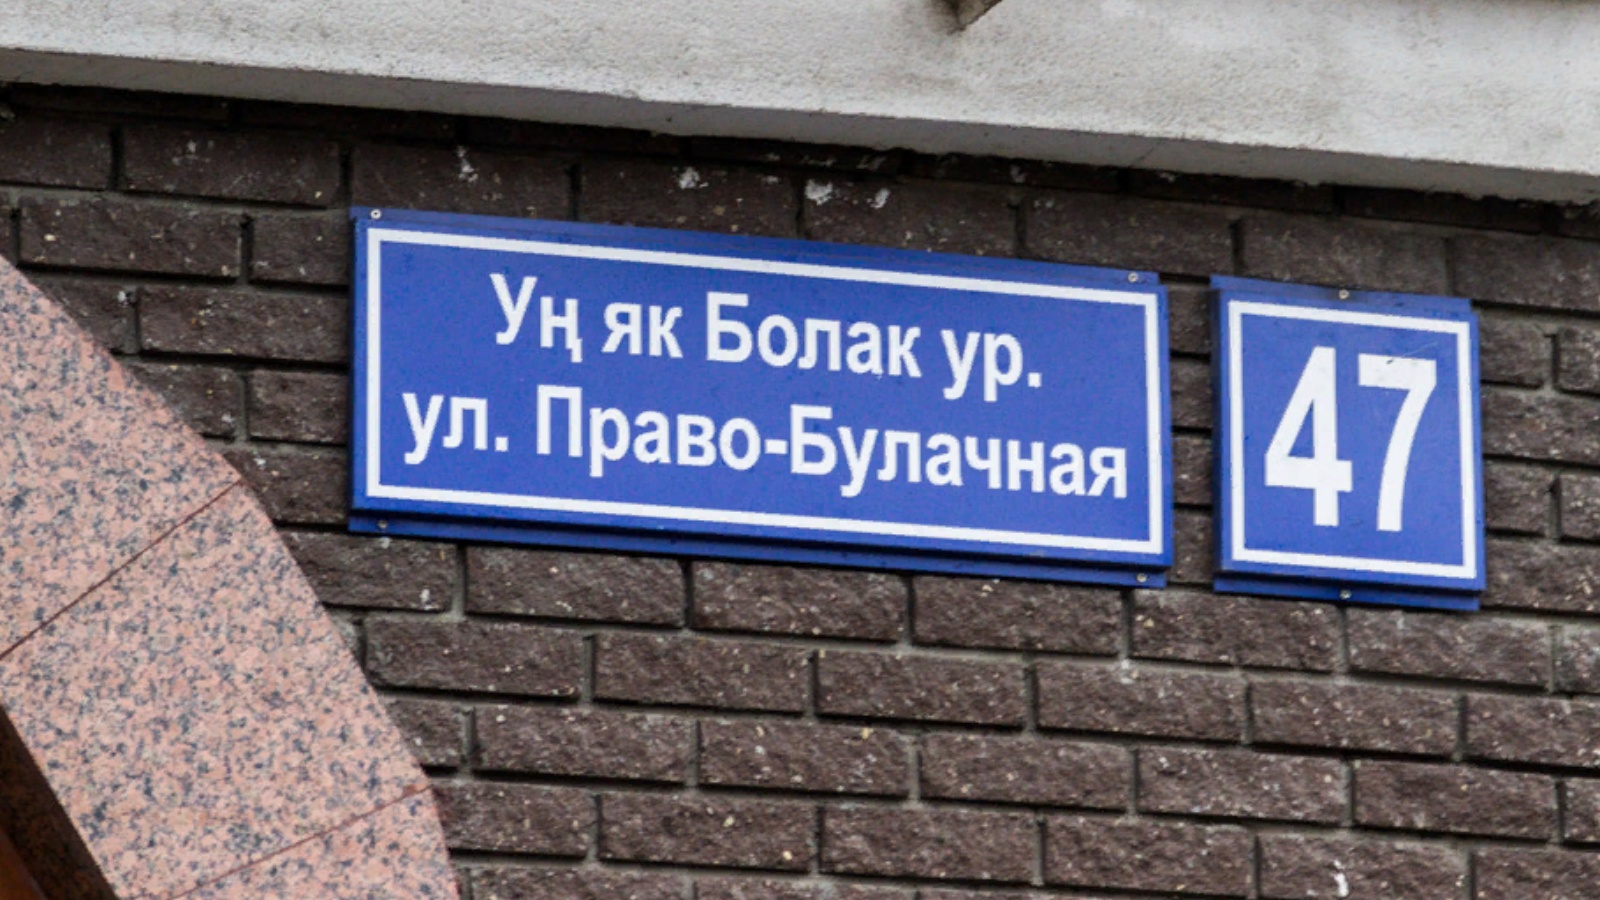 Таблички улиц в Казани